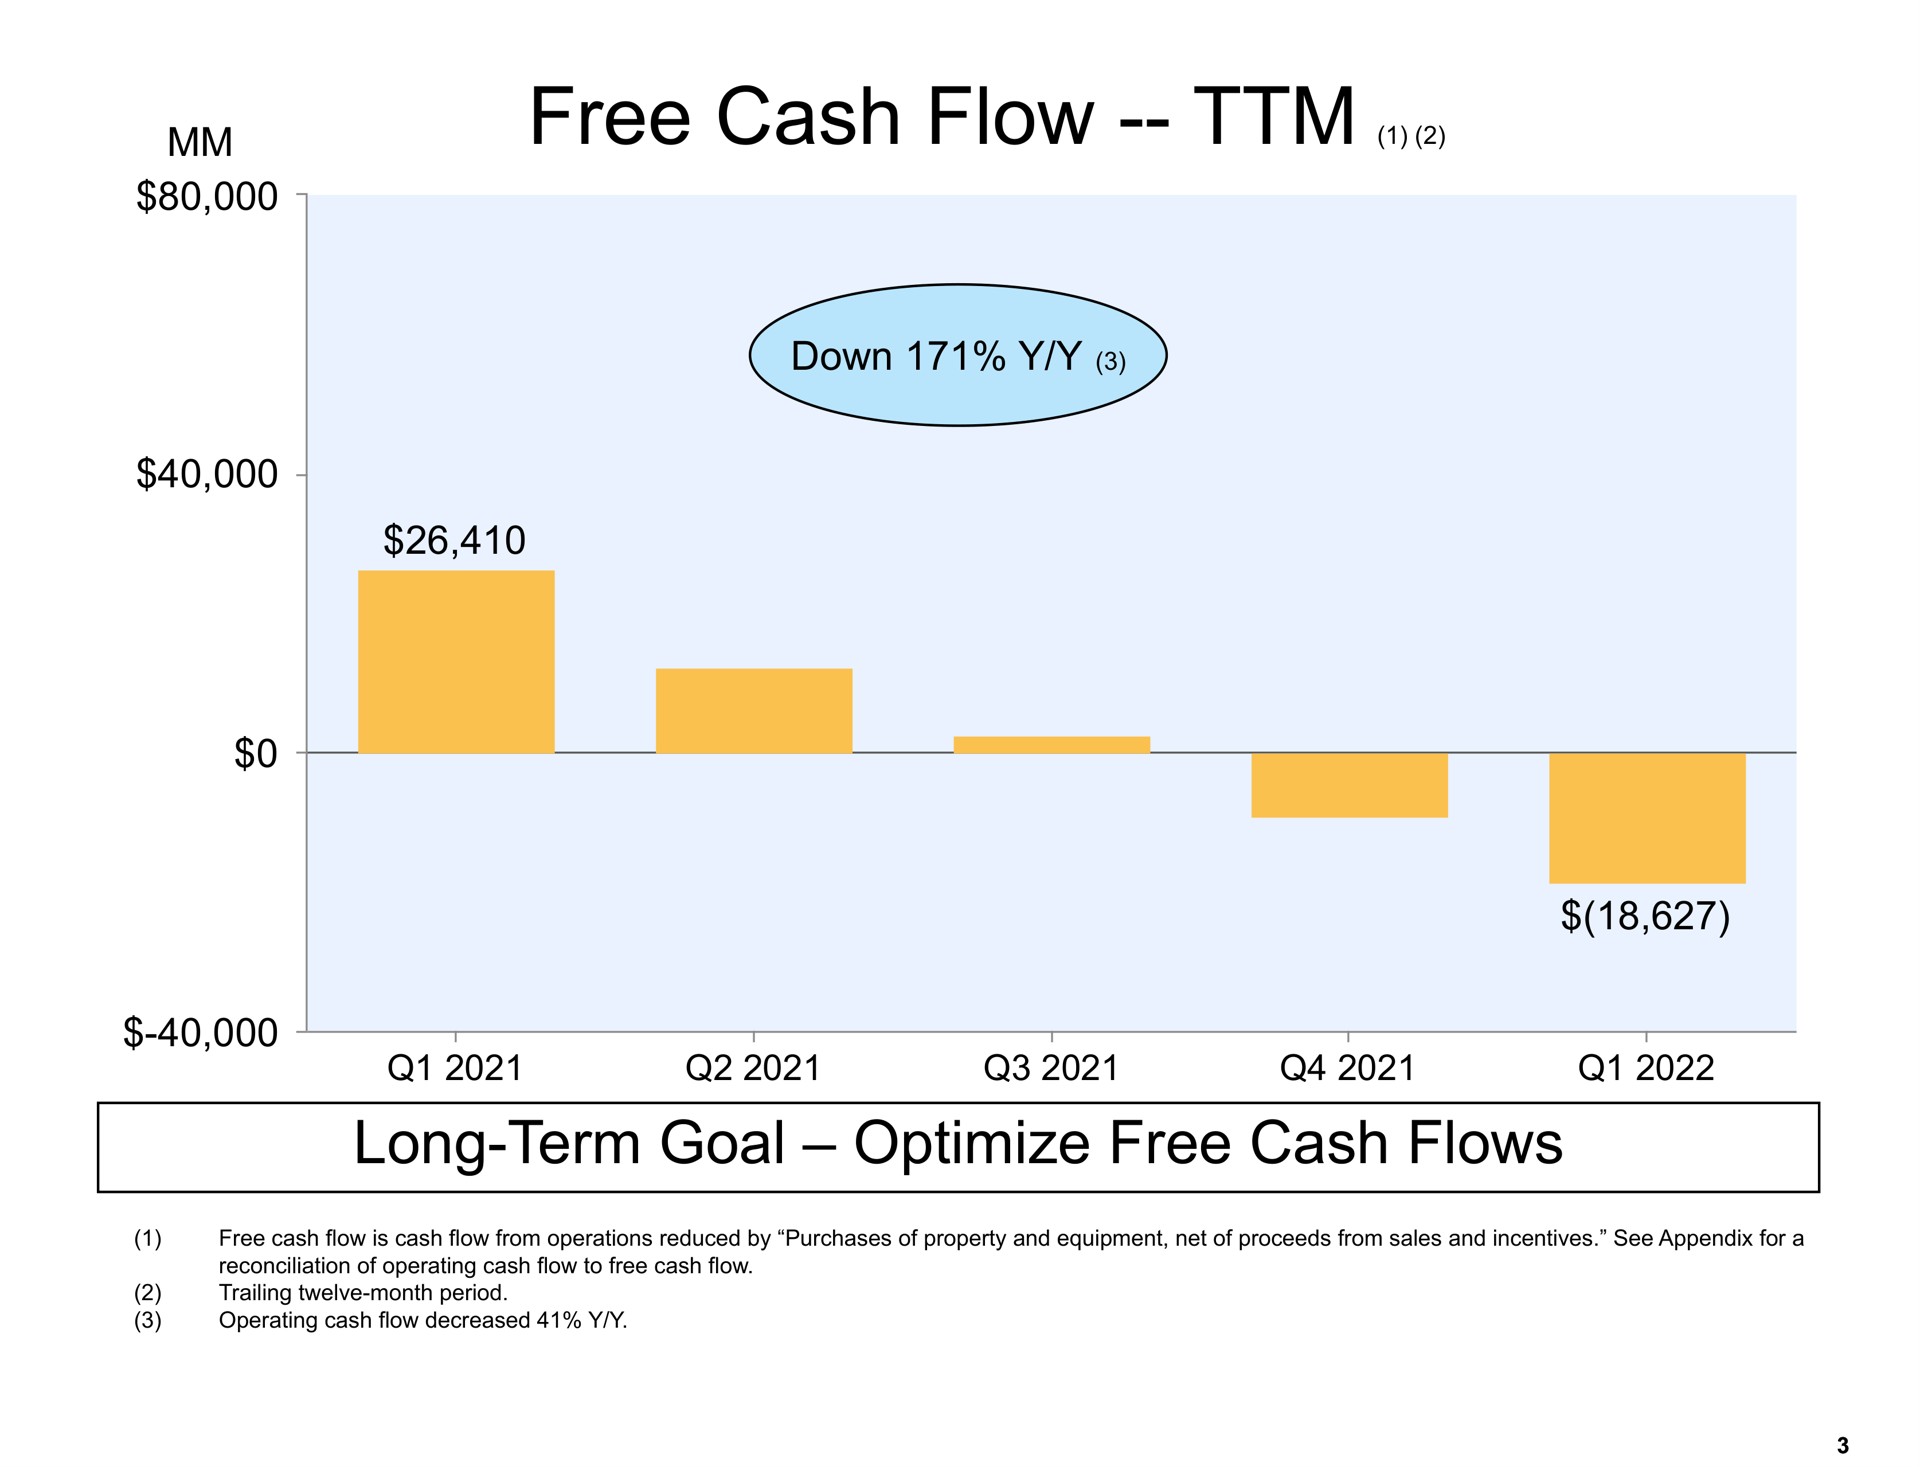 free cash flow long term goal optimize free cash flows | Amazon